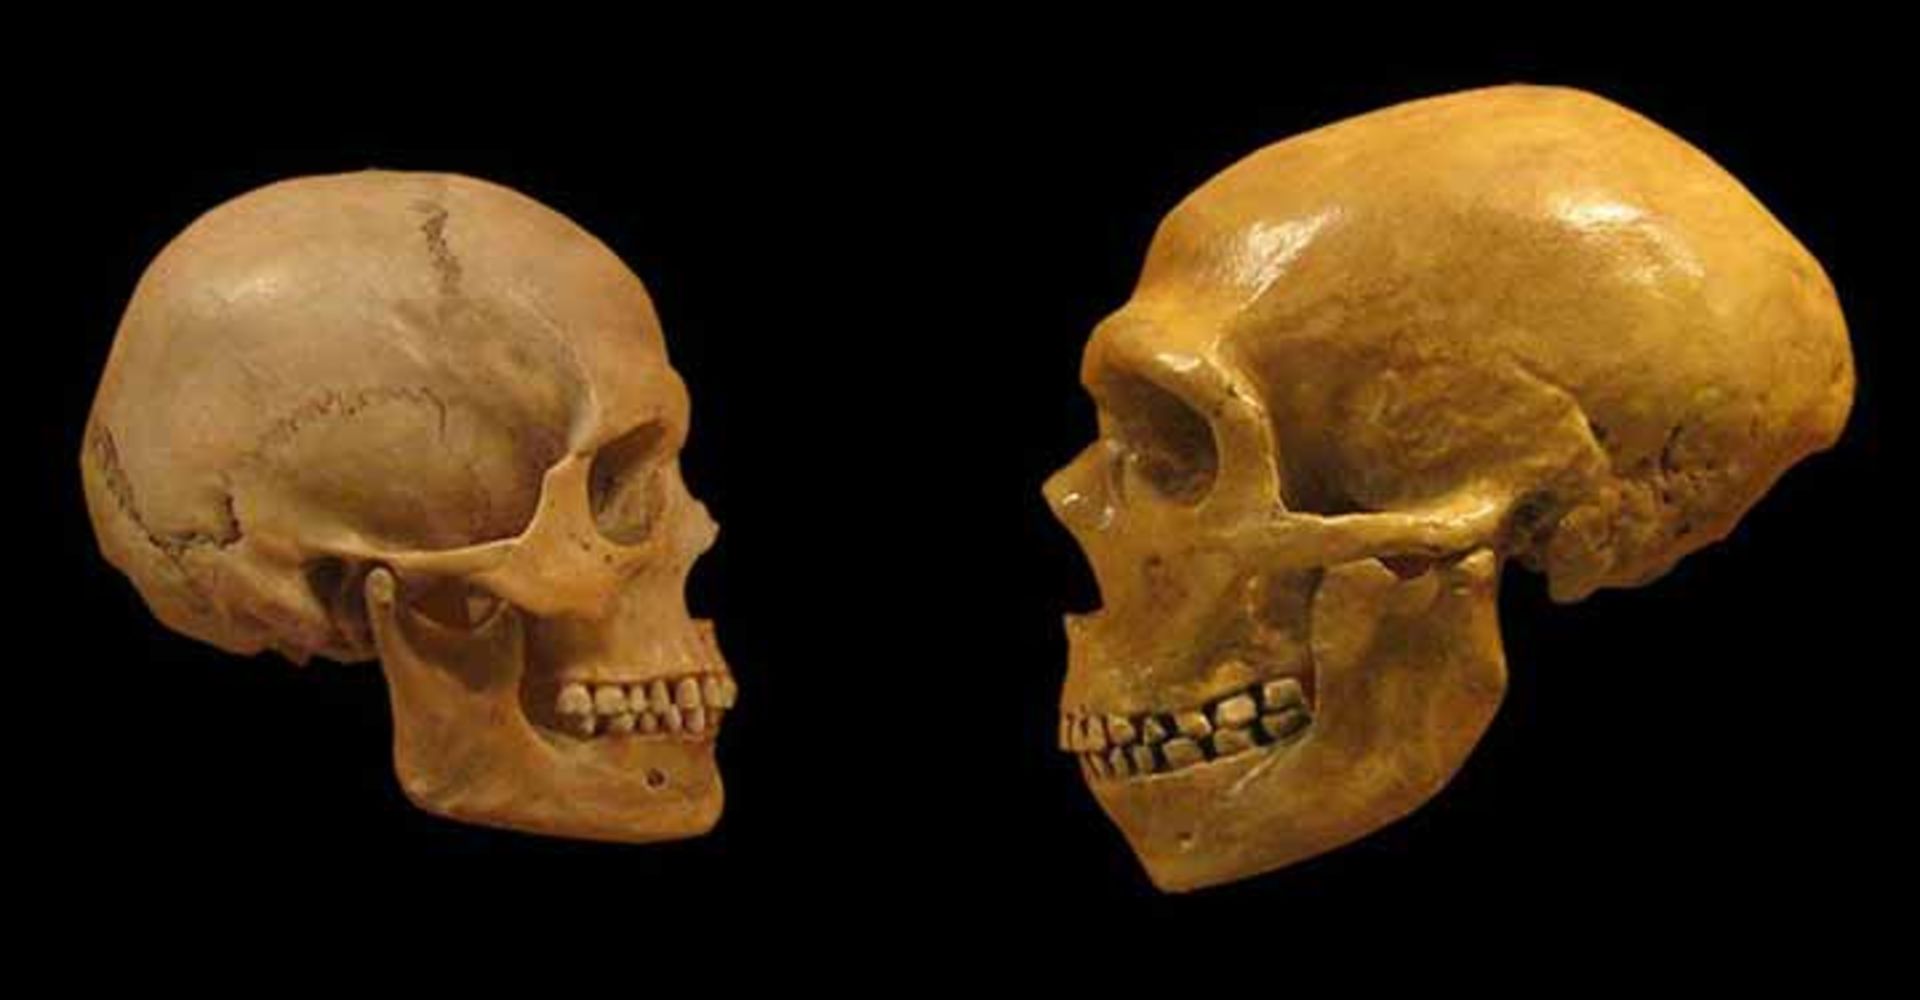 مرجع متخصصين ايران مقايسه جمجمه انسان مدرن (سمت چپ) با جمجمه يك نئاندرتال (سمت راست)